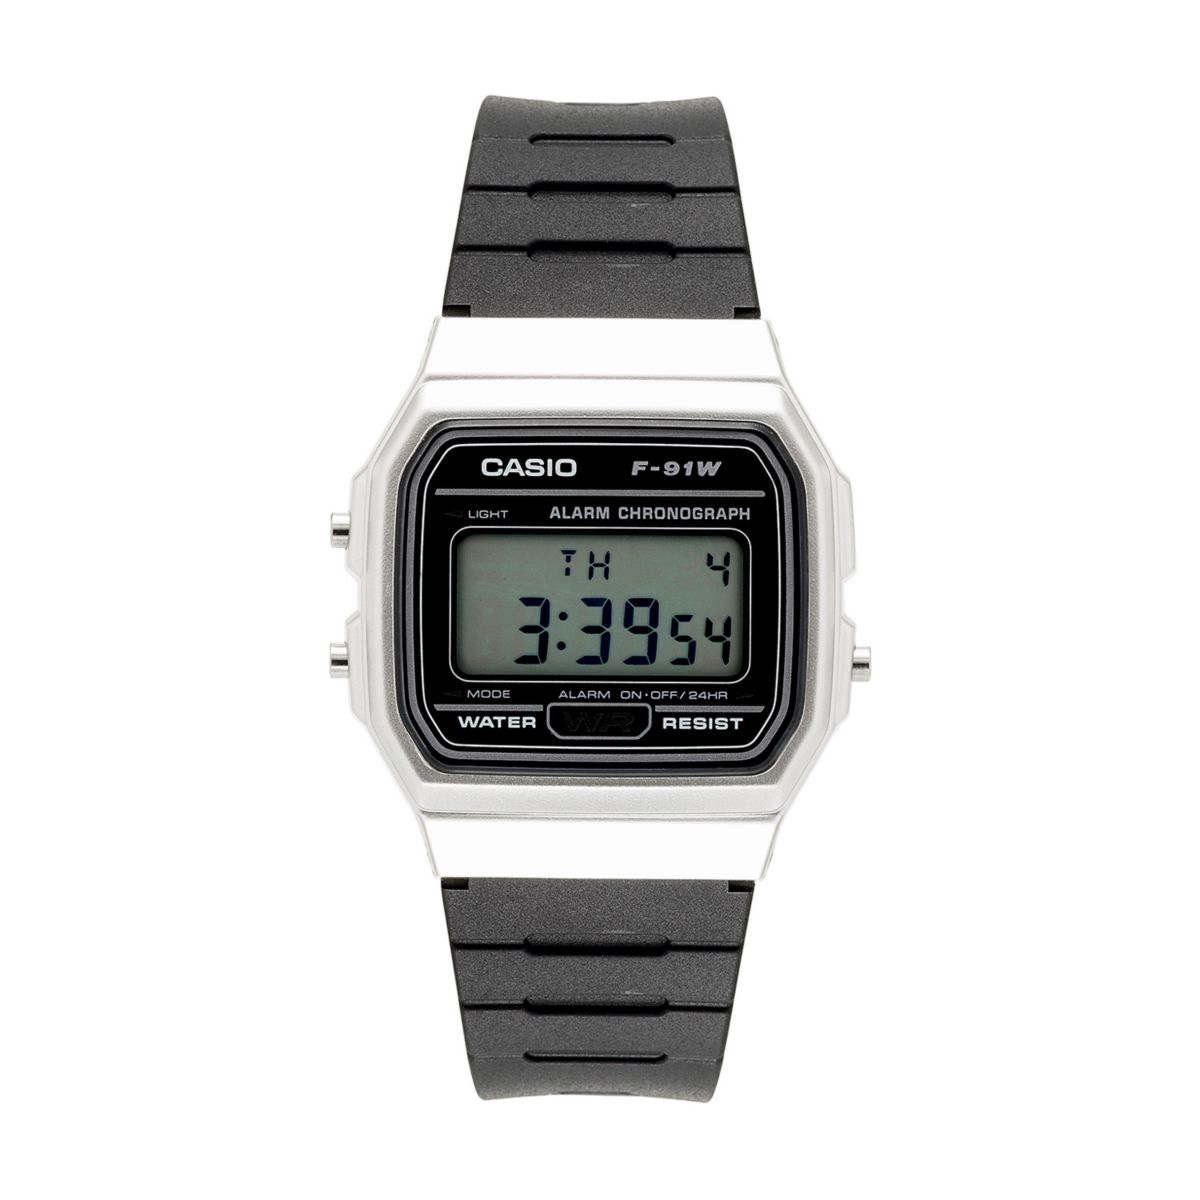 Мужские классические цифровые часы с хронографом Casio Casio